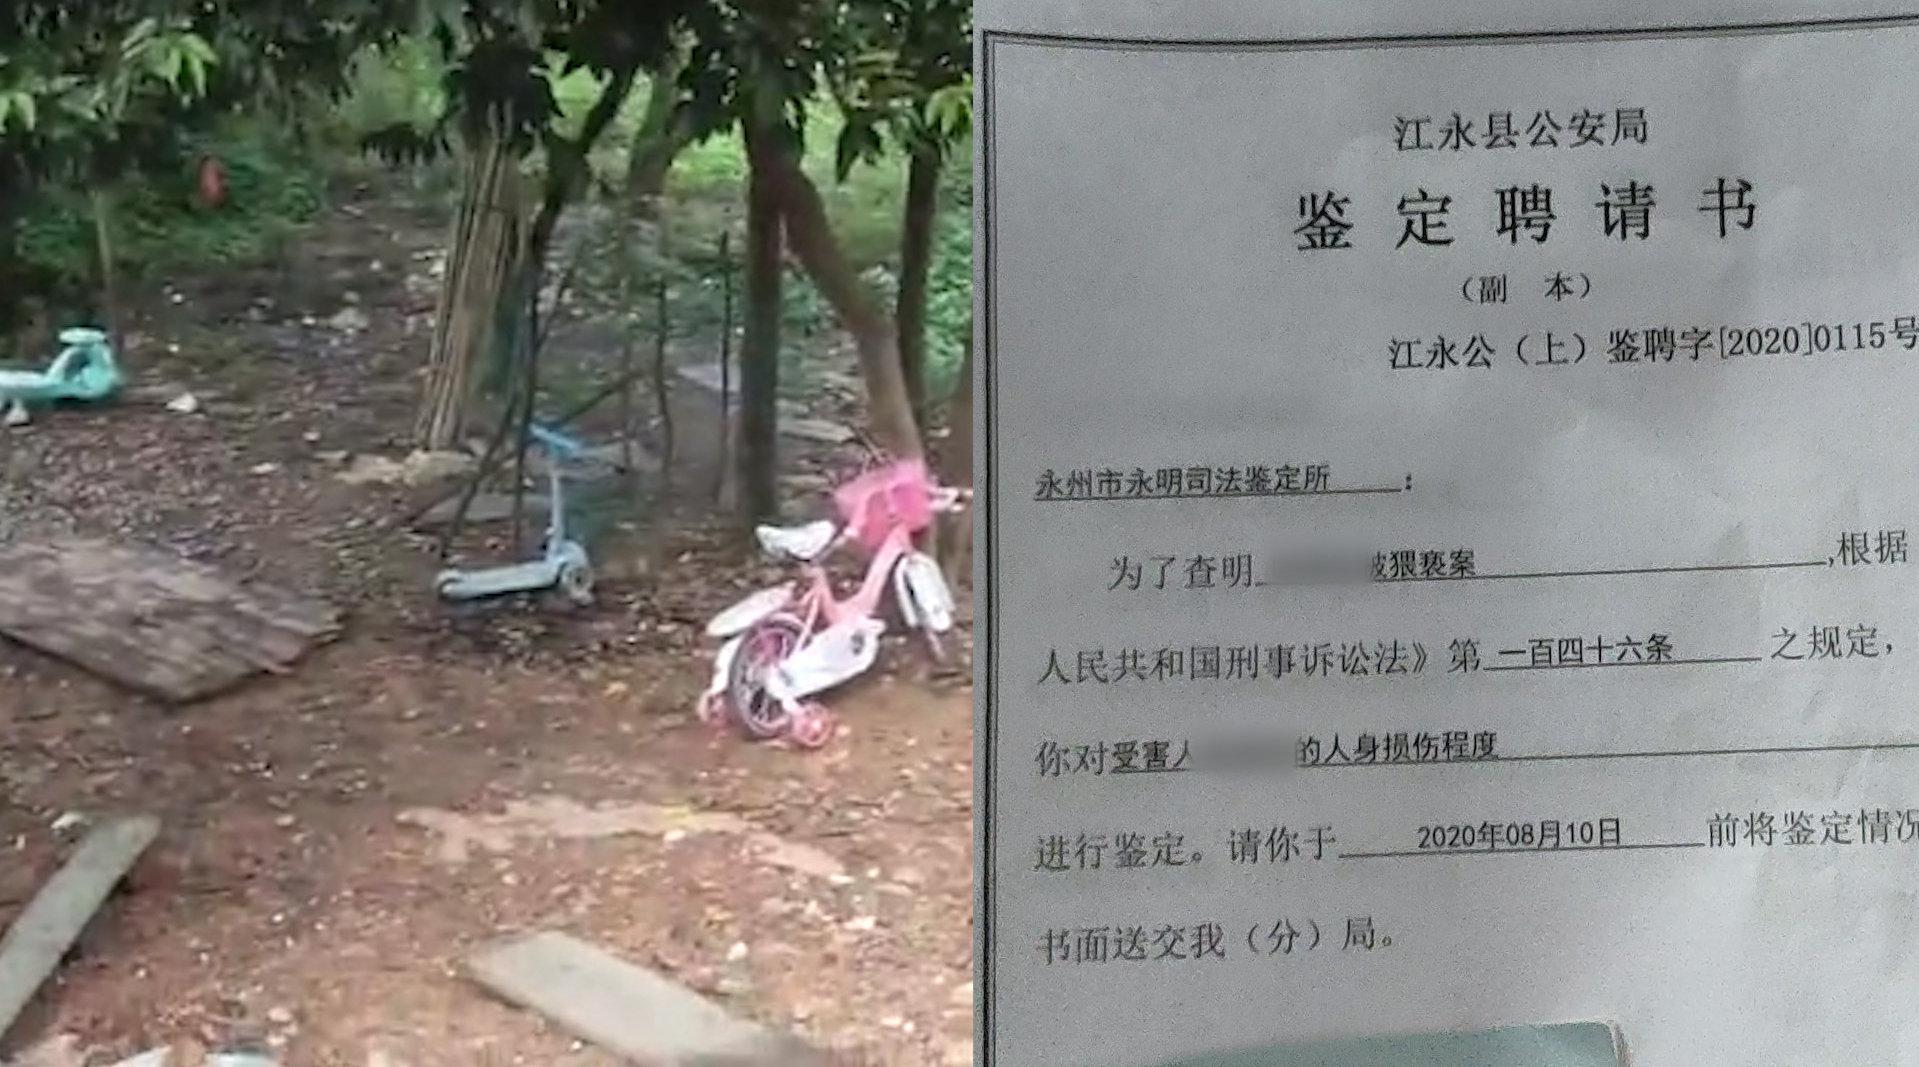 哈4歲幼女被鄰居性侵 犯人曾因殺人強姦兩次獲刑 - 時事台 - 香港高登討論區